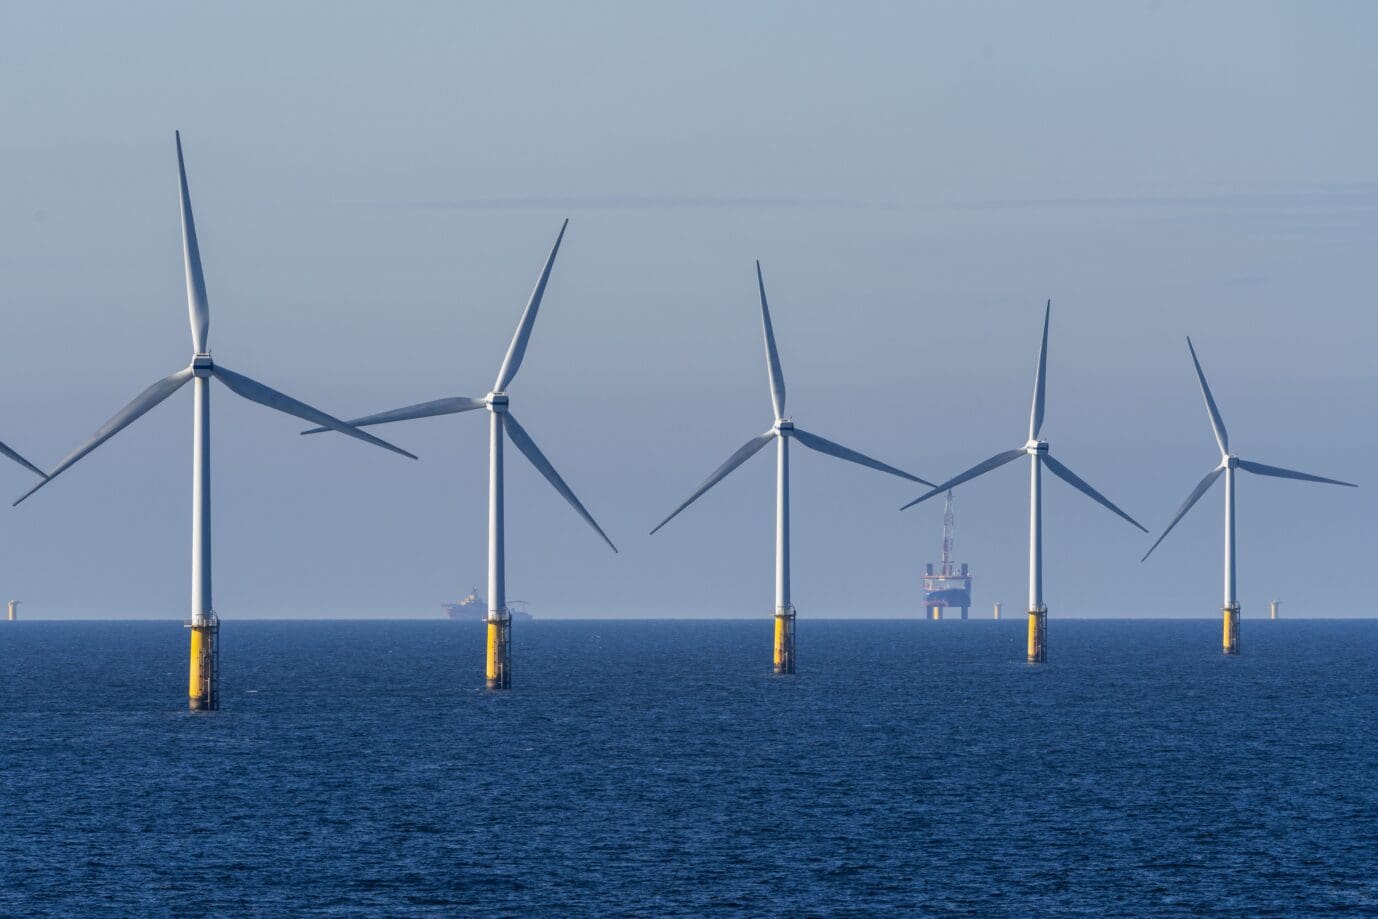 scheitert-die-energiewende-aufgrund-der-inflation?-offshore-windparks-vor-dem-scheitern